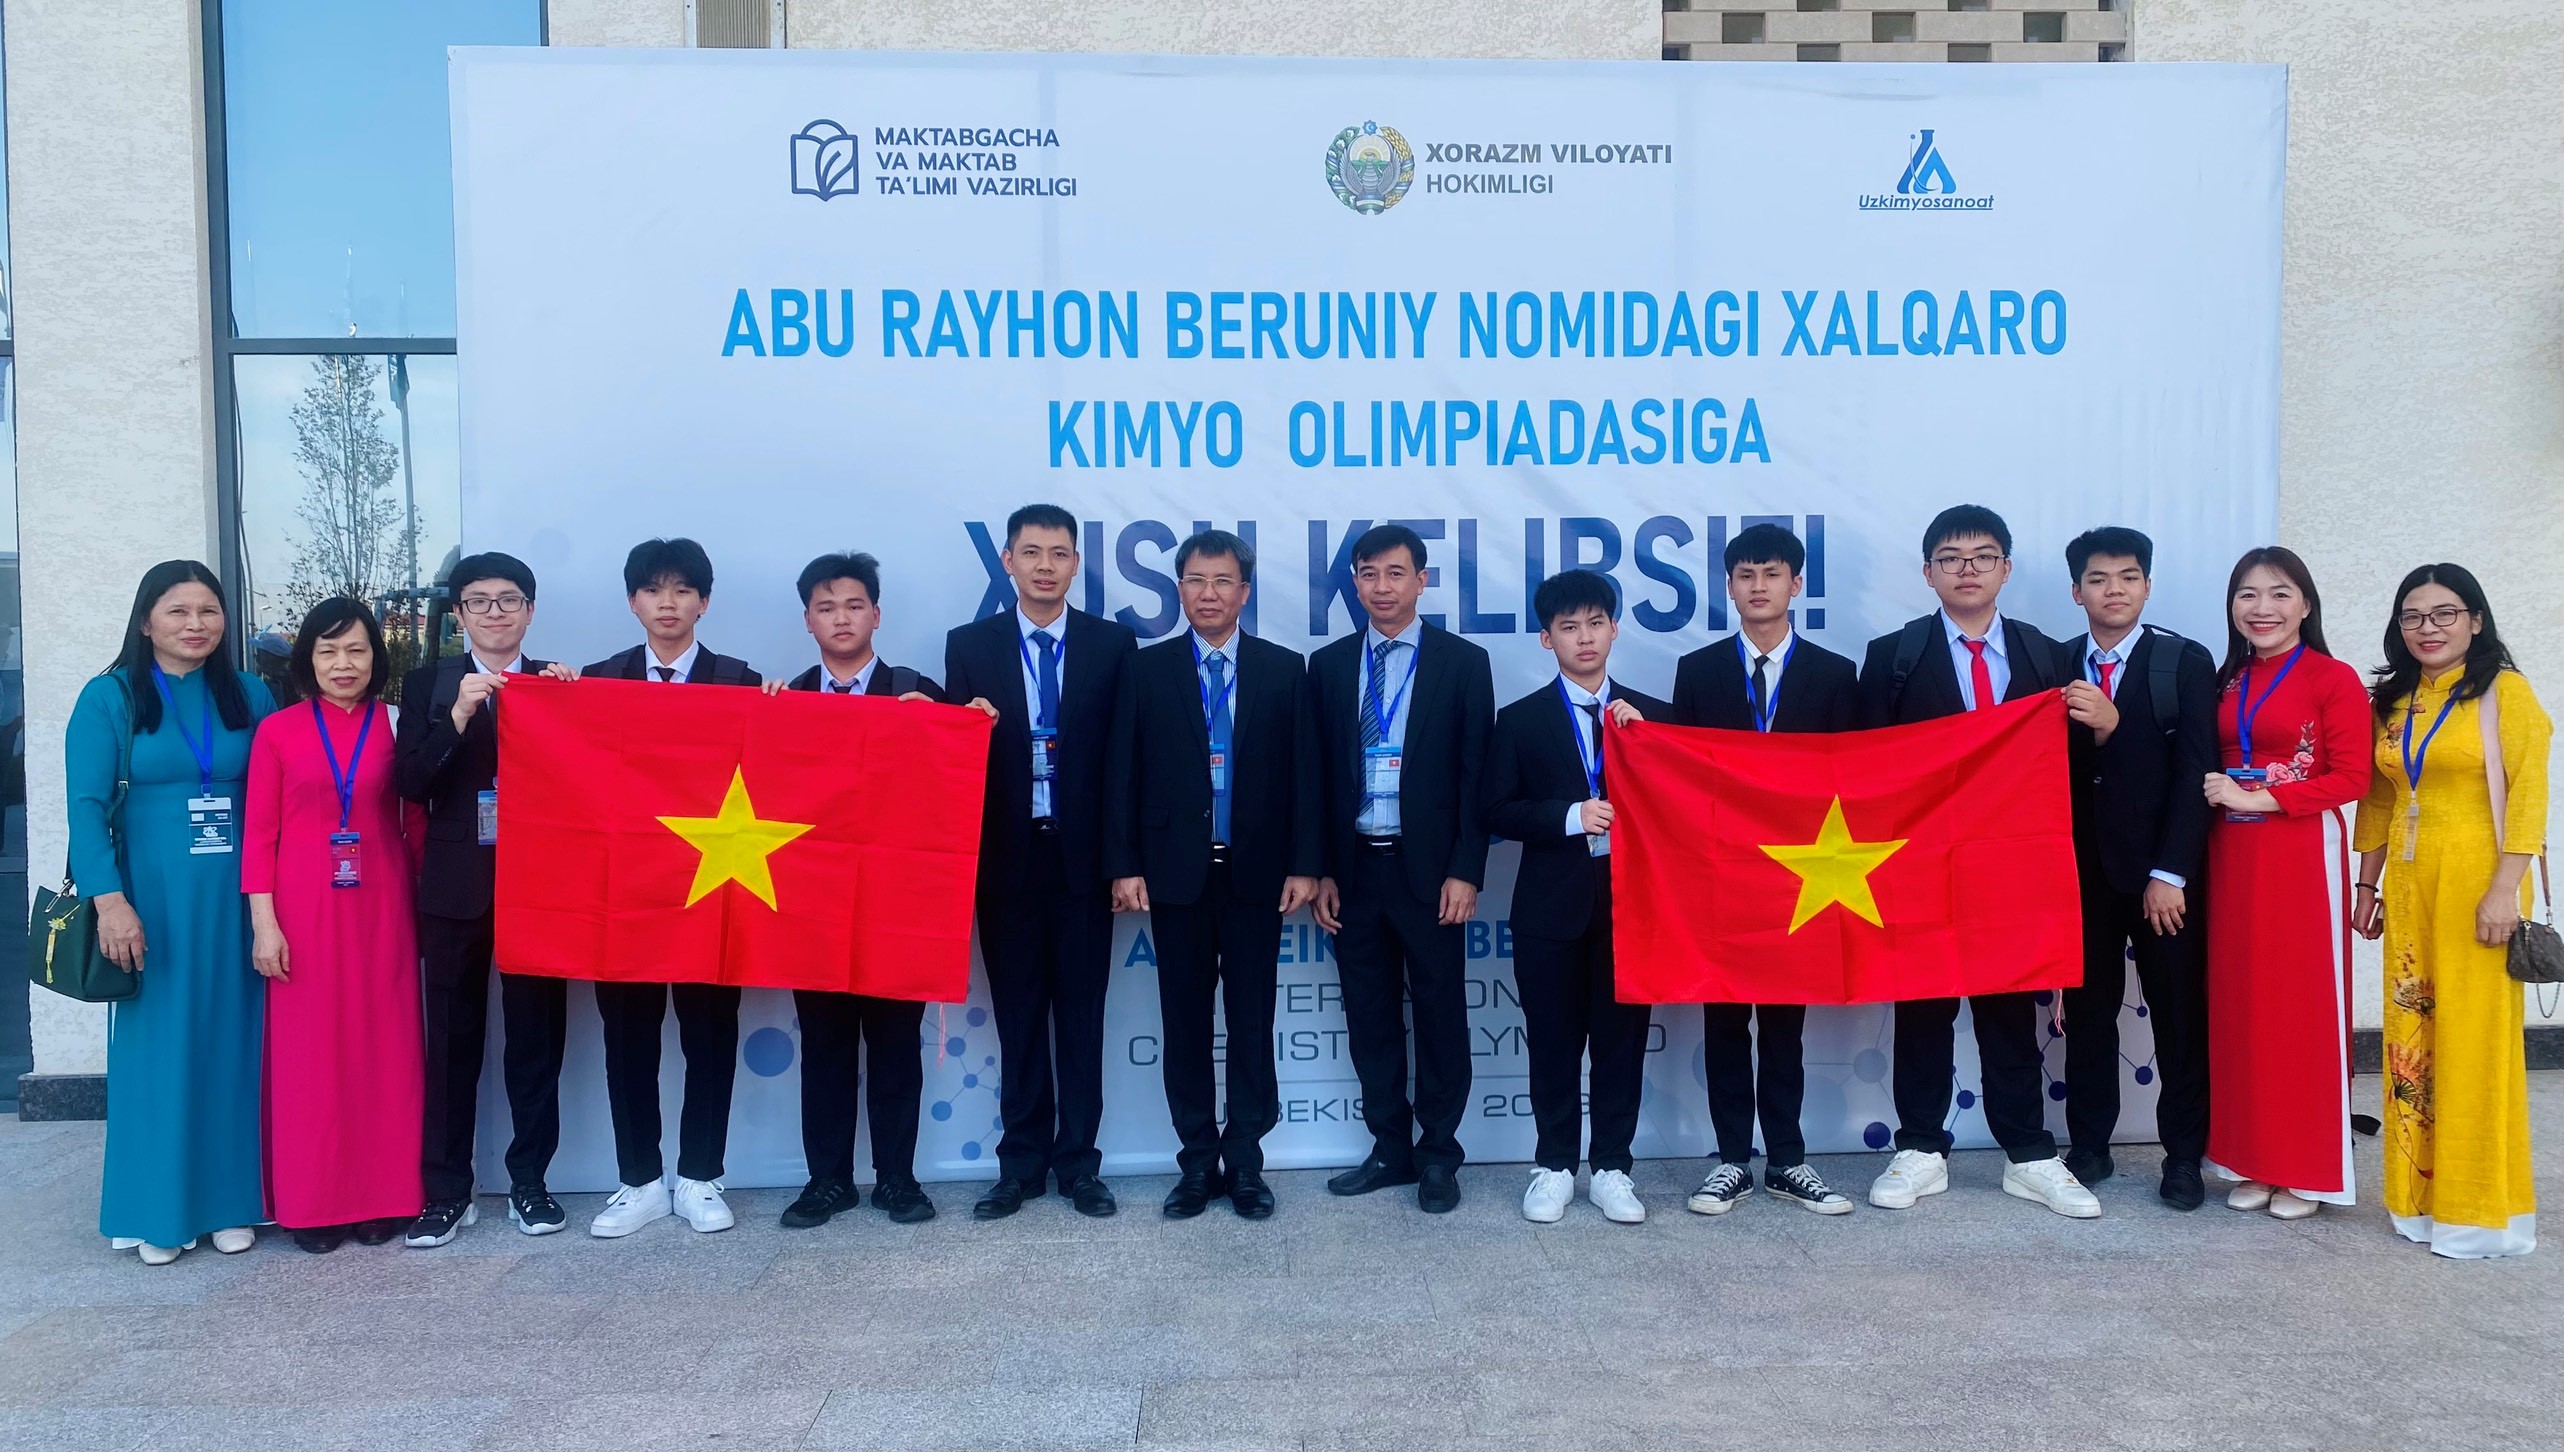 Đoàn Việt Nam xếp thứ nhất trong kỳ thi Olympic Hóa học quốc tế Abu Reikhan Beruniy lần thứ nhất năm 2023 tổ chức tại Uzbekistan